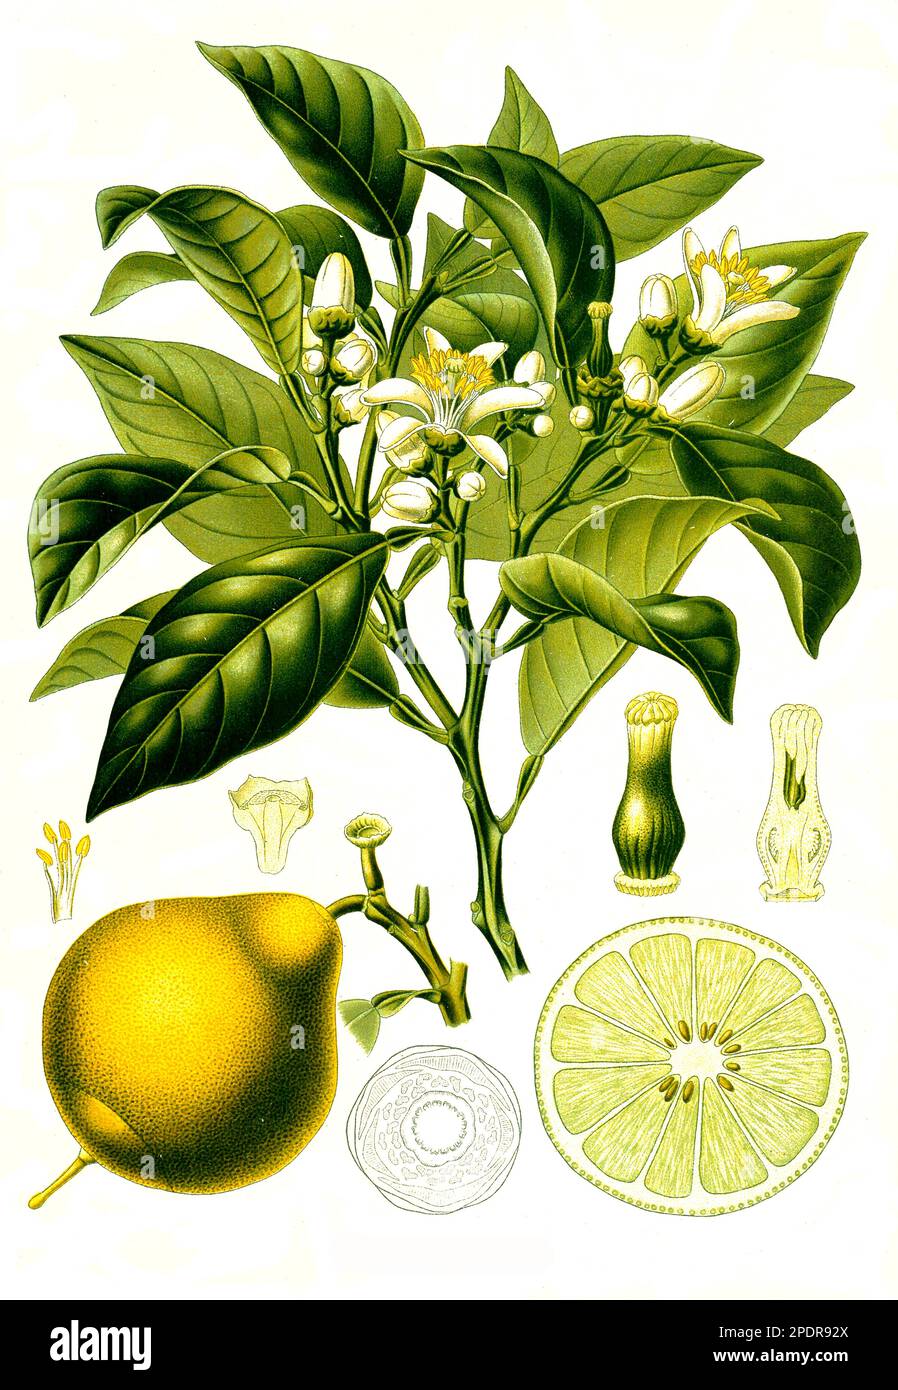 Heilpflanze, Bergamotte (Citrus × limon, Citrus bergamia) bezeichnet man eine Gruppe aus der Gattung der Zitruspflanzen (Citrus), die als Hybride aus Süßer Limette (Citrus limetta) und Bitterorange (Citrus × aurantium) oder aus Zitronatzitrone (Citrus medica) und Bitterorange entstanden sein könnten, Historisch, digital restaurierte Reproduktion von einer Vorlage aus dem 18. Jahrhundert Stock Photo